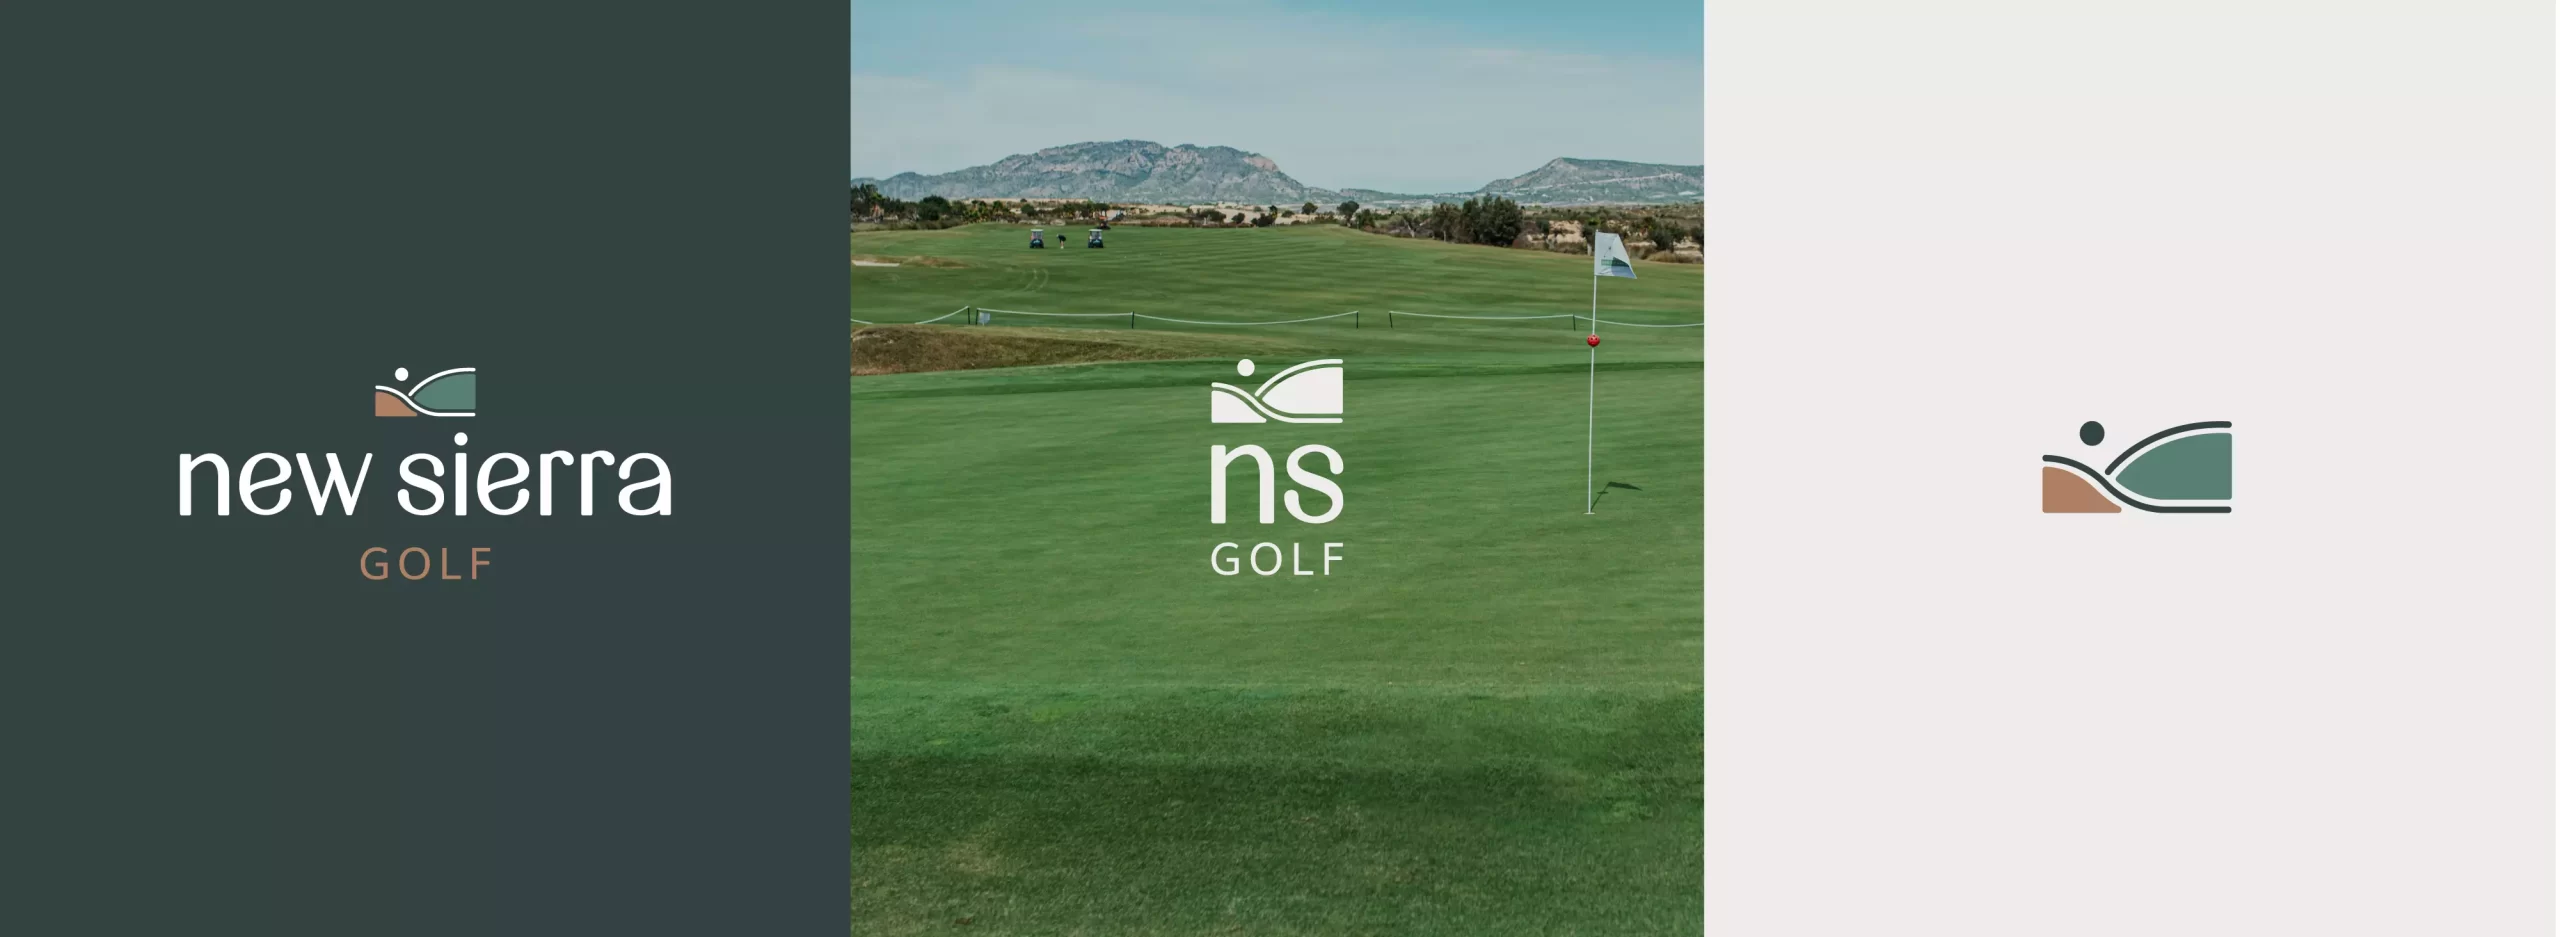 Campaña Publicidad de Golf, NEW SIERRA - Contenido audiovisual y branding para la marca<br />
